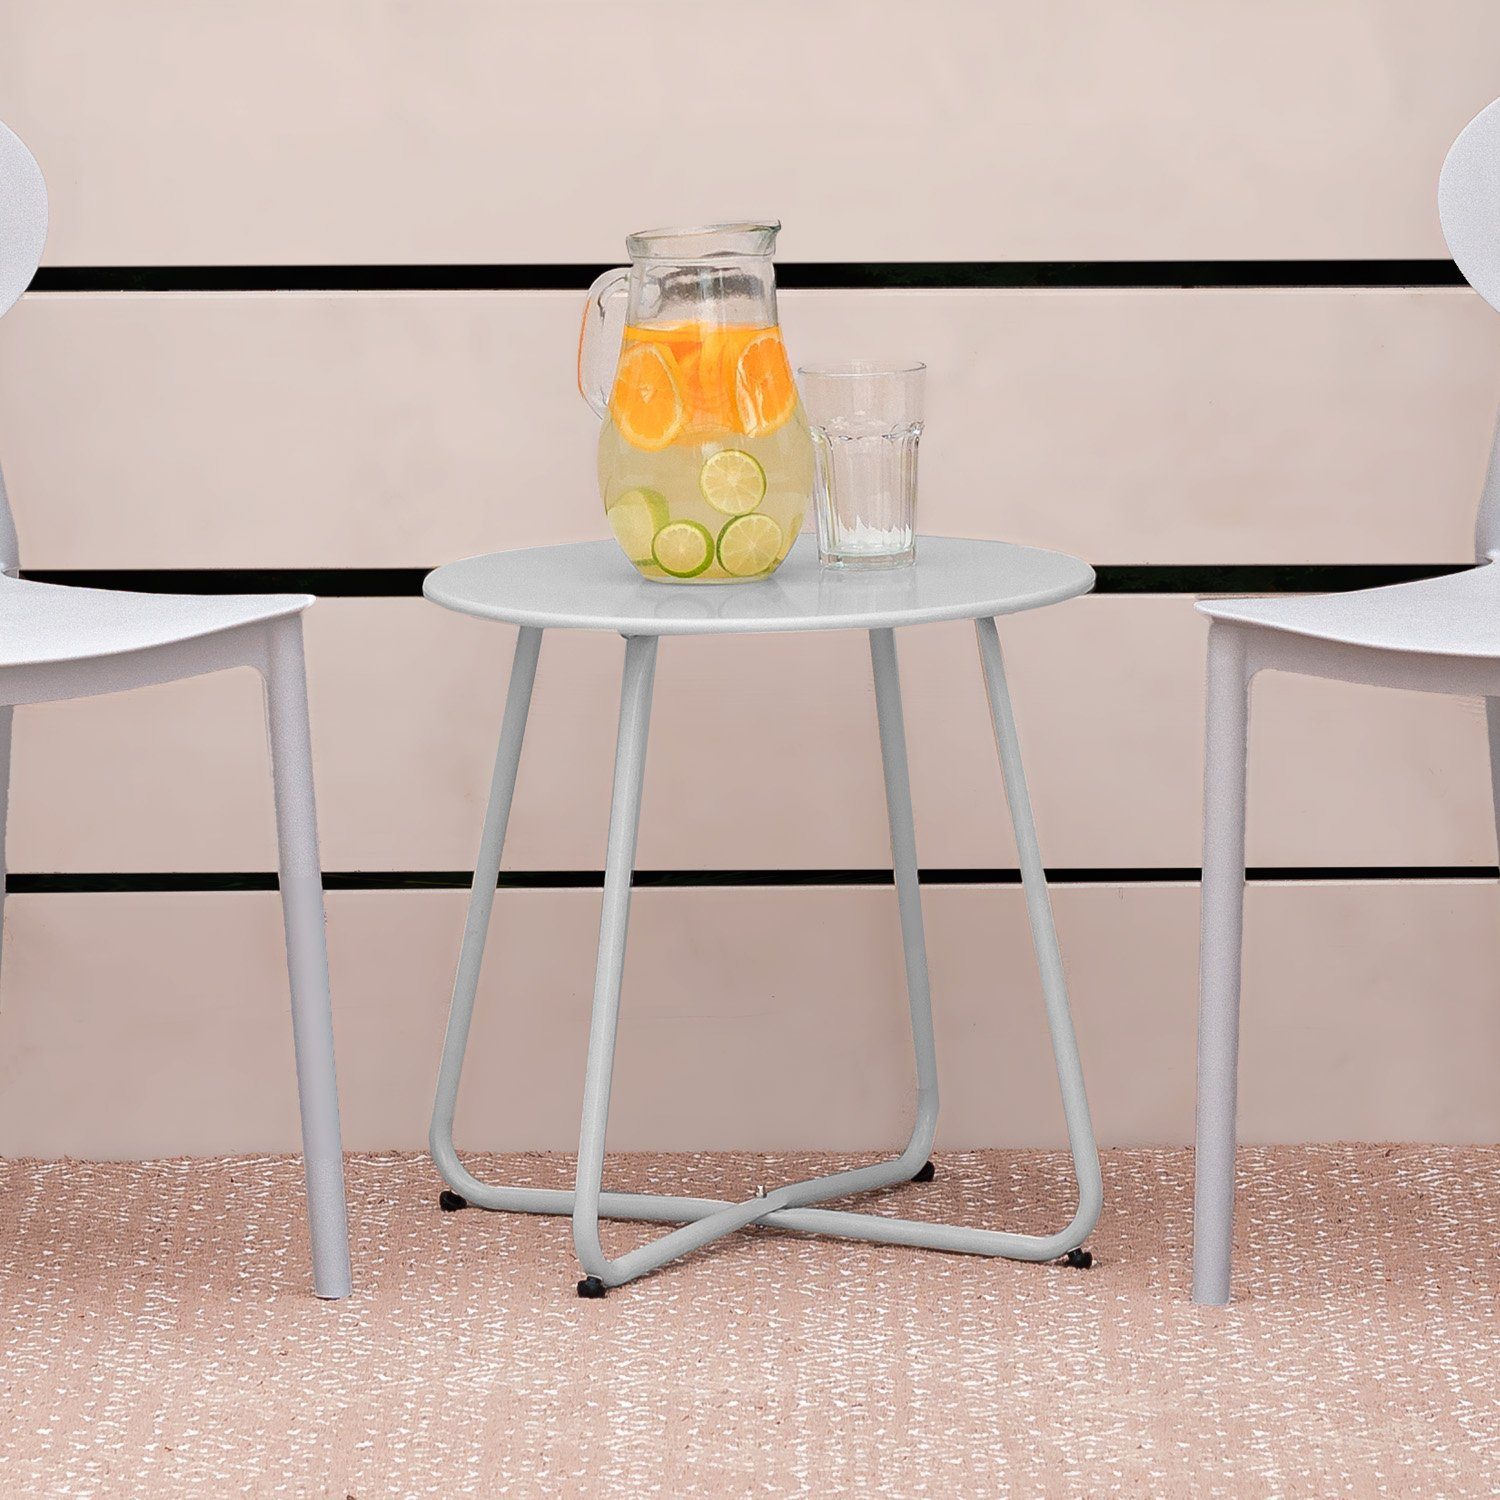 Metall Set) Tisch grau | Homestyle4u Kaffeetisch Rund | grau Beistelltisch grau Gartentisch (kein